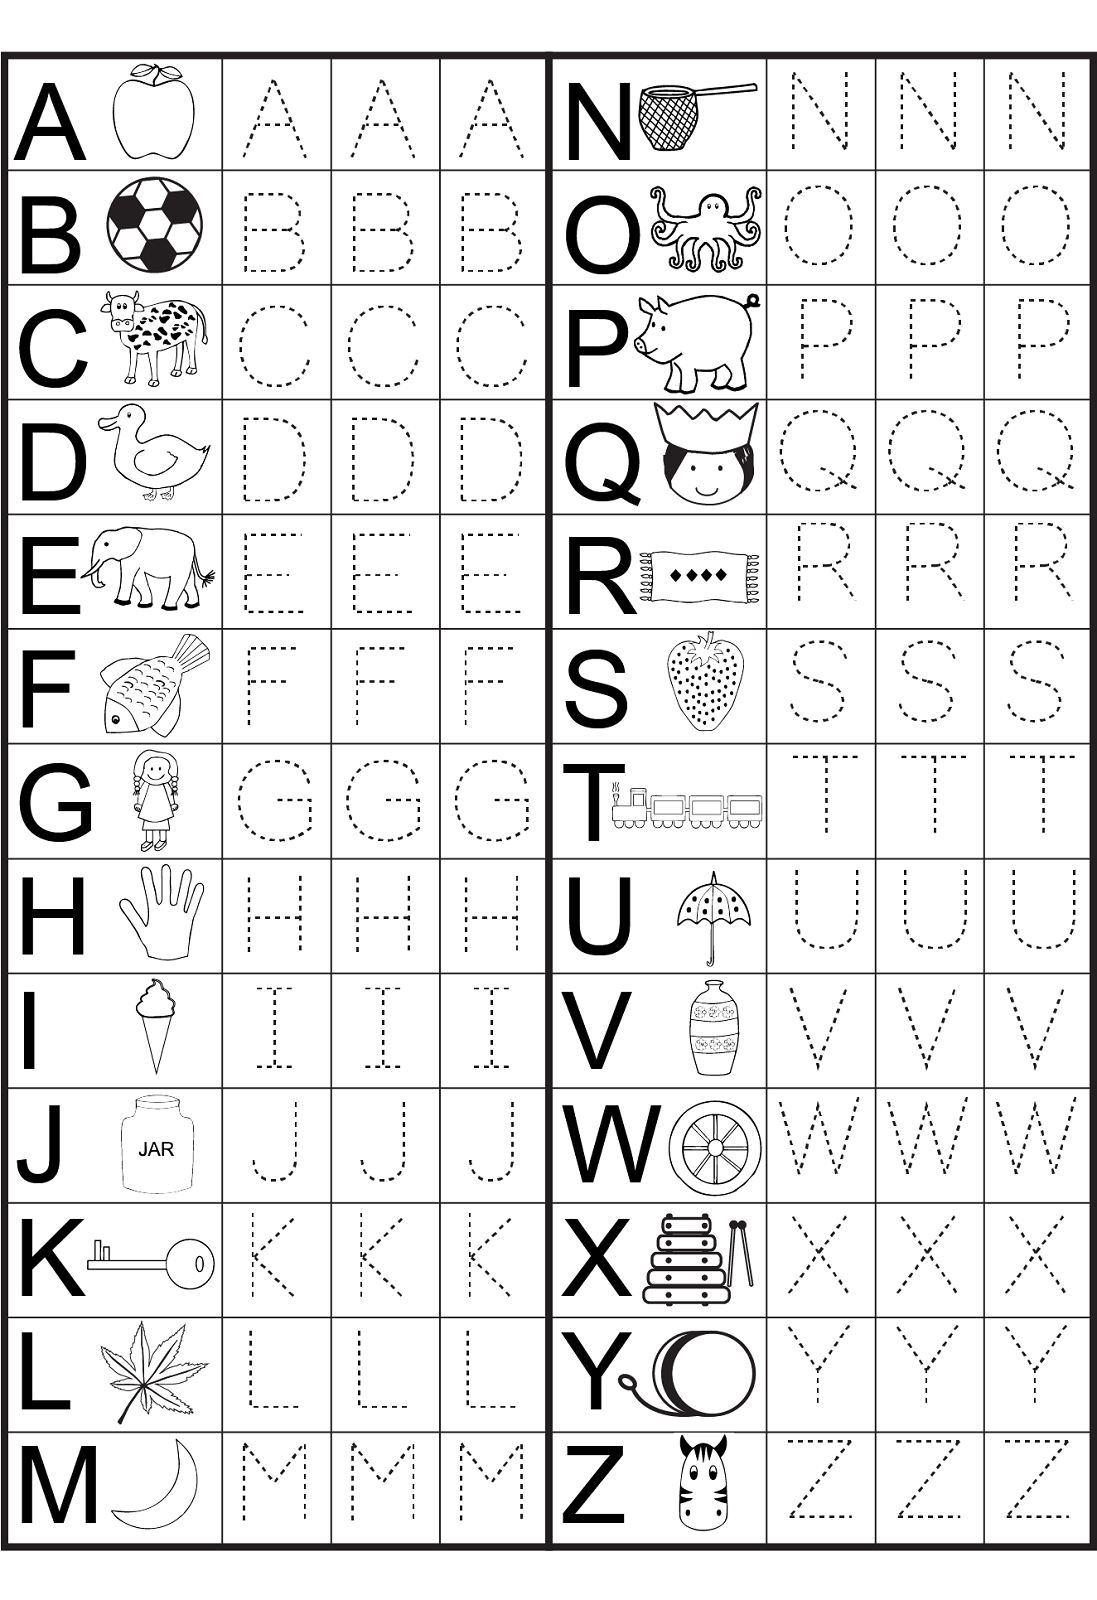 Kindergarten Alphabet Worksheets To Print | Preschool inside Alphabet Worksheets Kindergarten